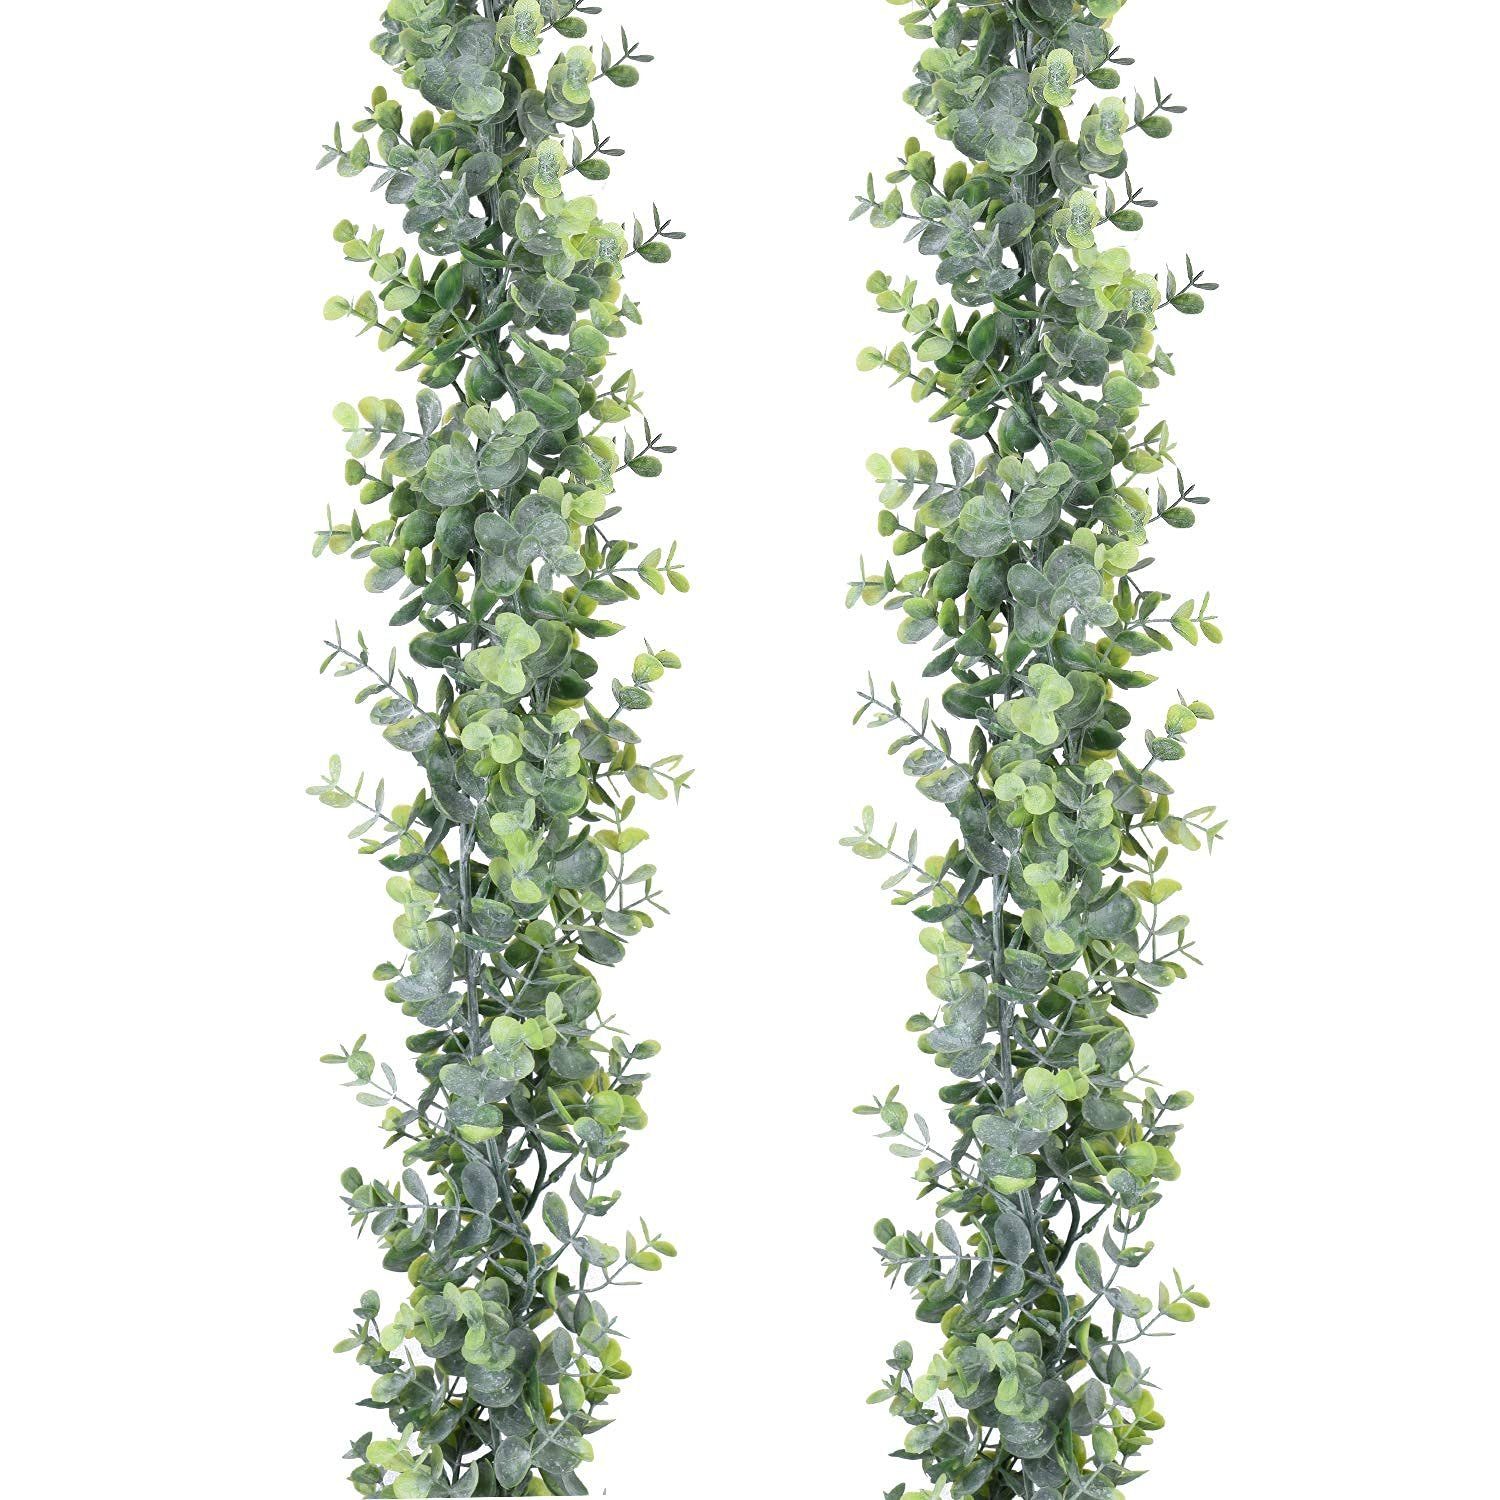 Girlande Kunstgirlande JedBesetzt 1.8m, Girlande,Künstliche Eukalyptus Hängepflanzen